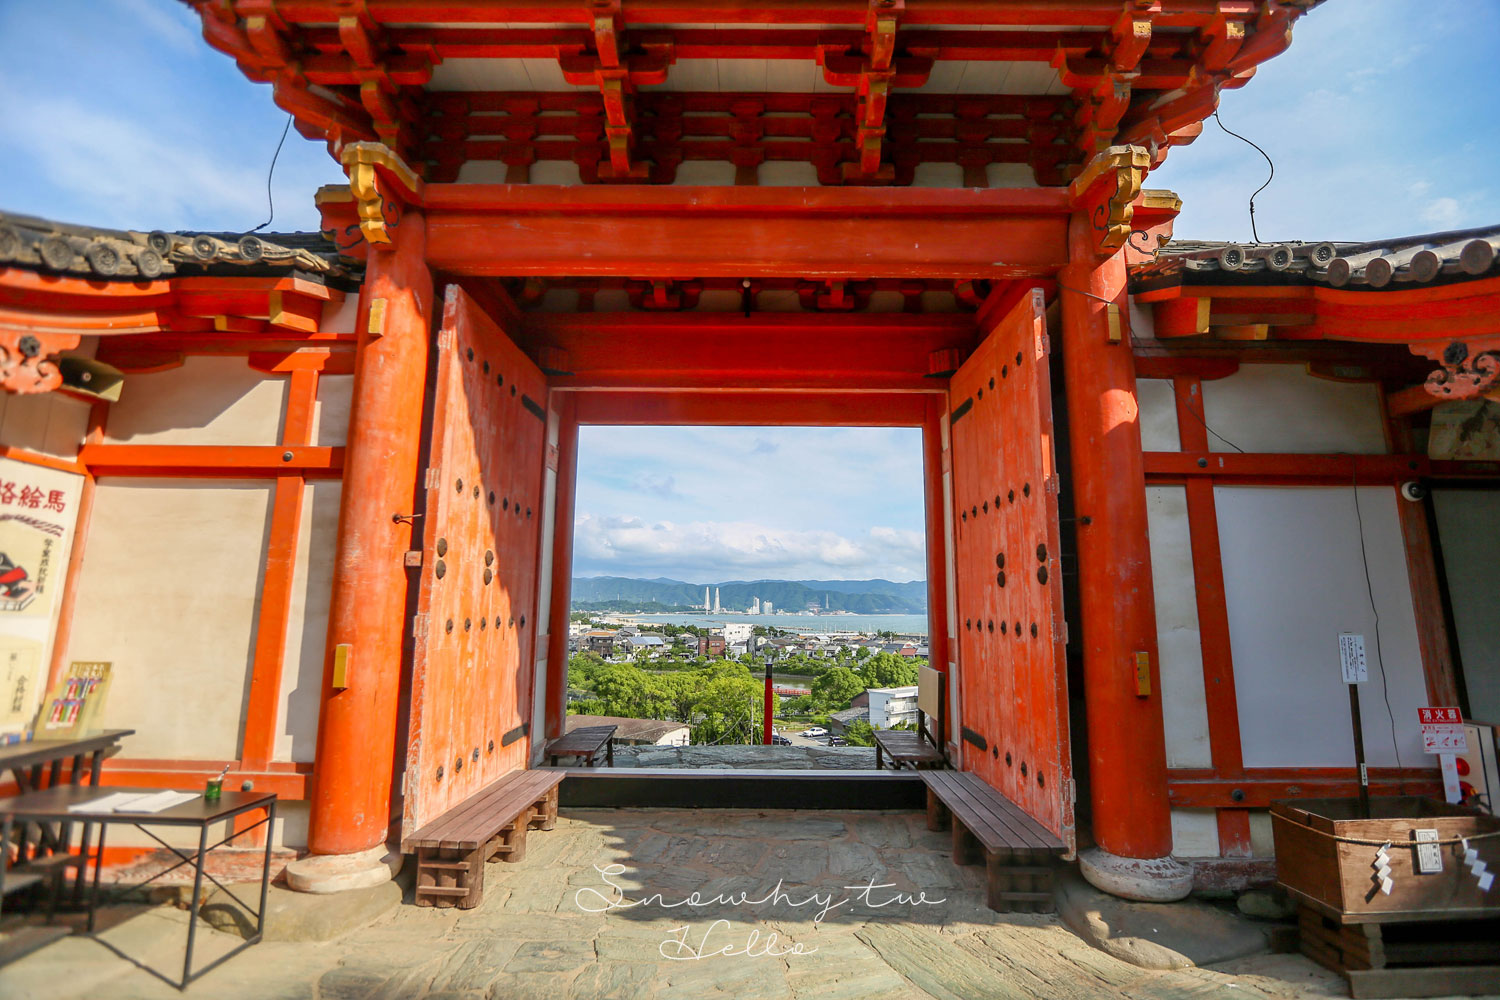 和歌山景點,日本三菅廟之一,歌浦天滿宮,和歌浦灣絕景,日本旅遊,和歌山自由行,和歌山